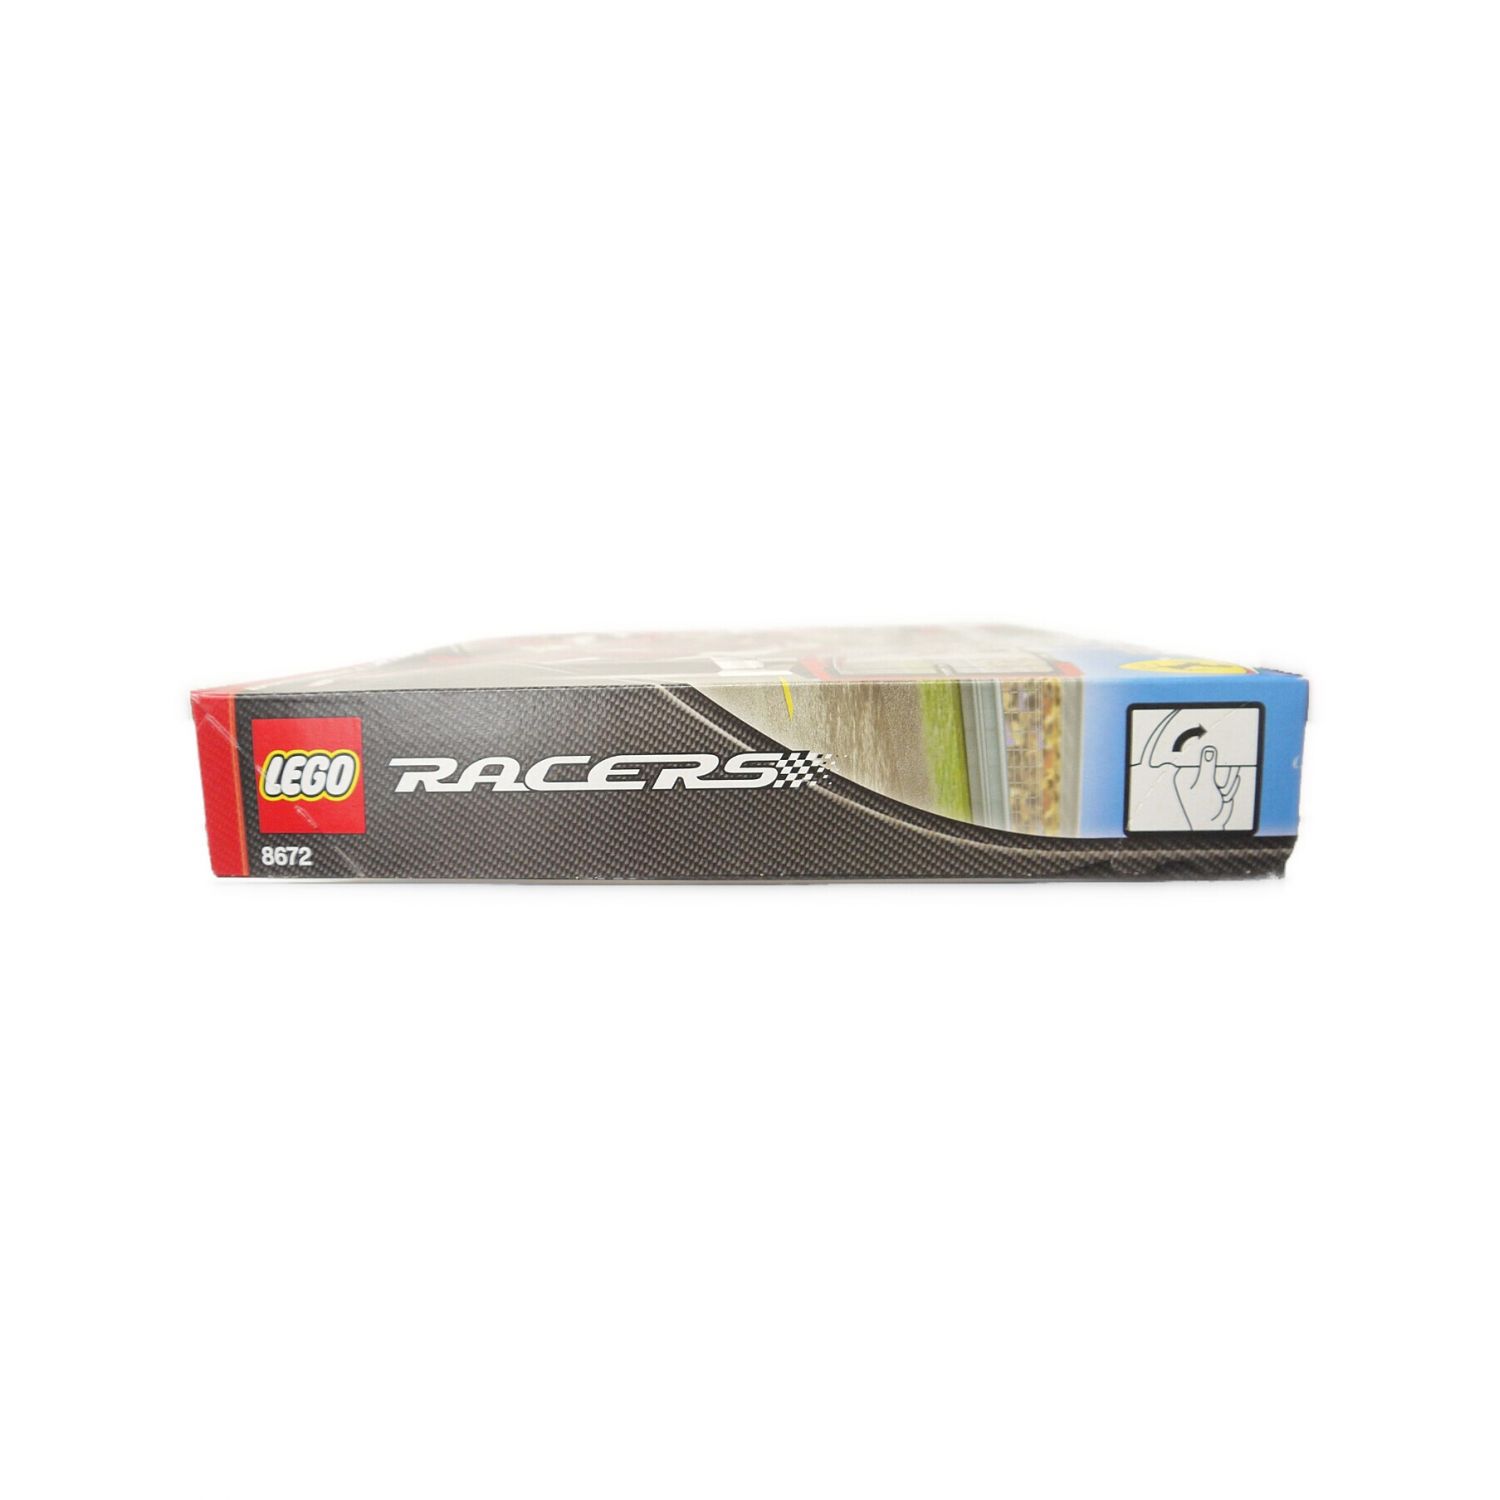 LEGO (レゴ) ブロック フェラーリF1フィニッシュライン 8672